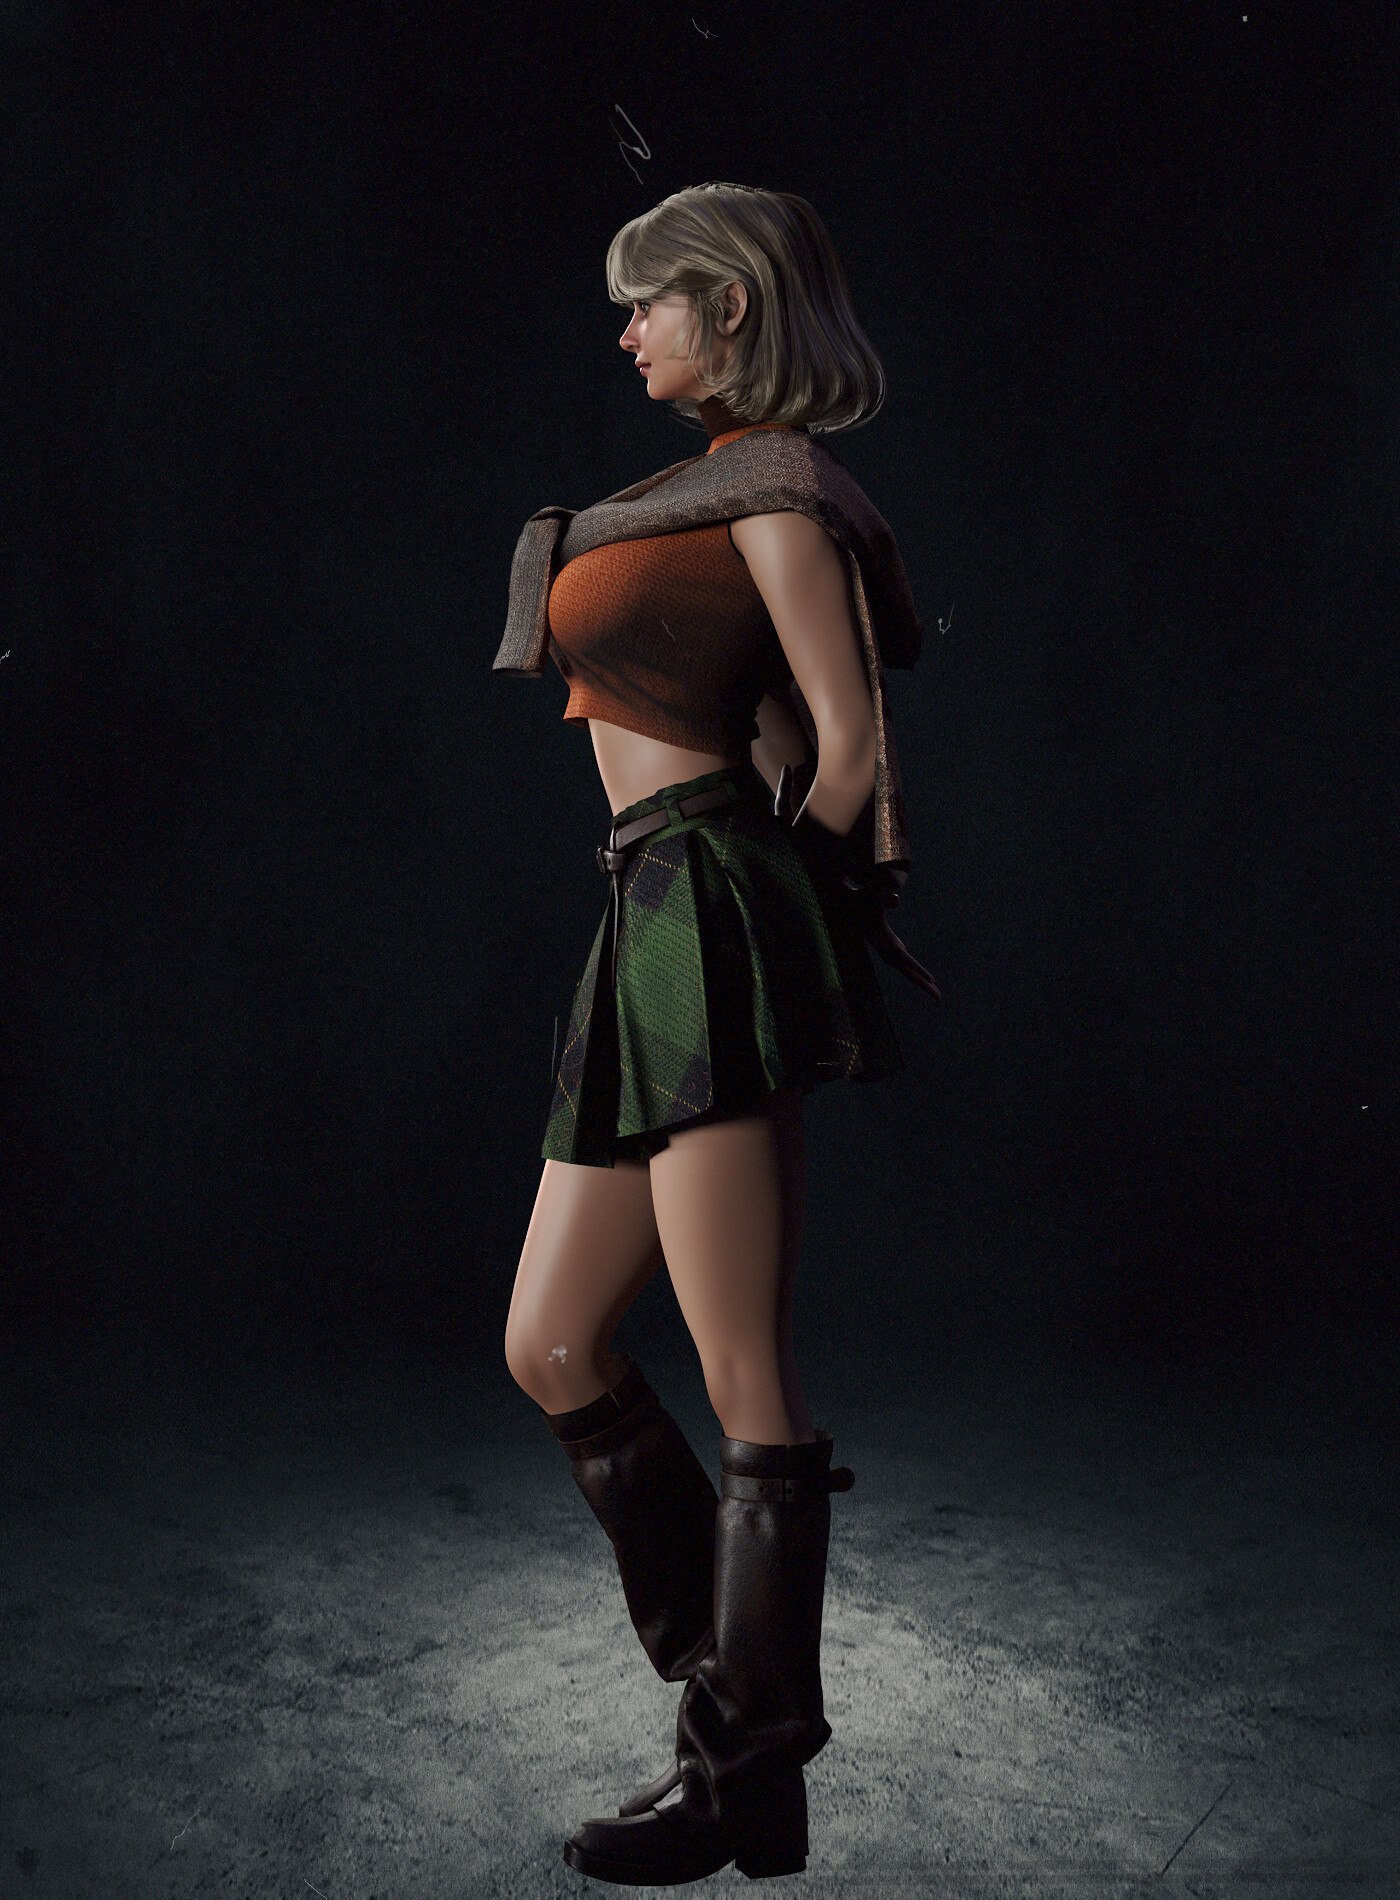 ArtStation - Fan art of Ashley Graham from Resident Evil 4 Remake